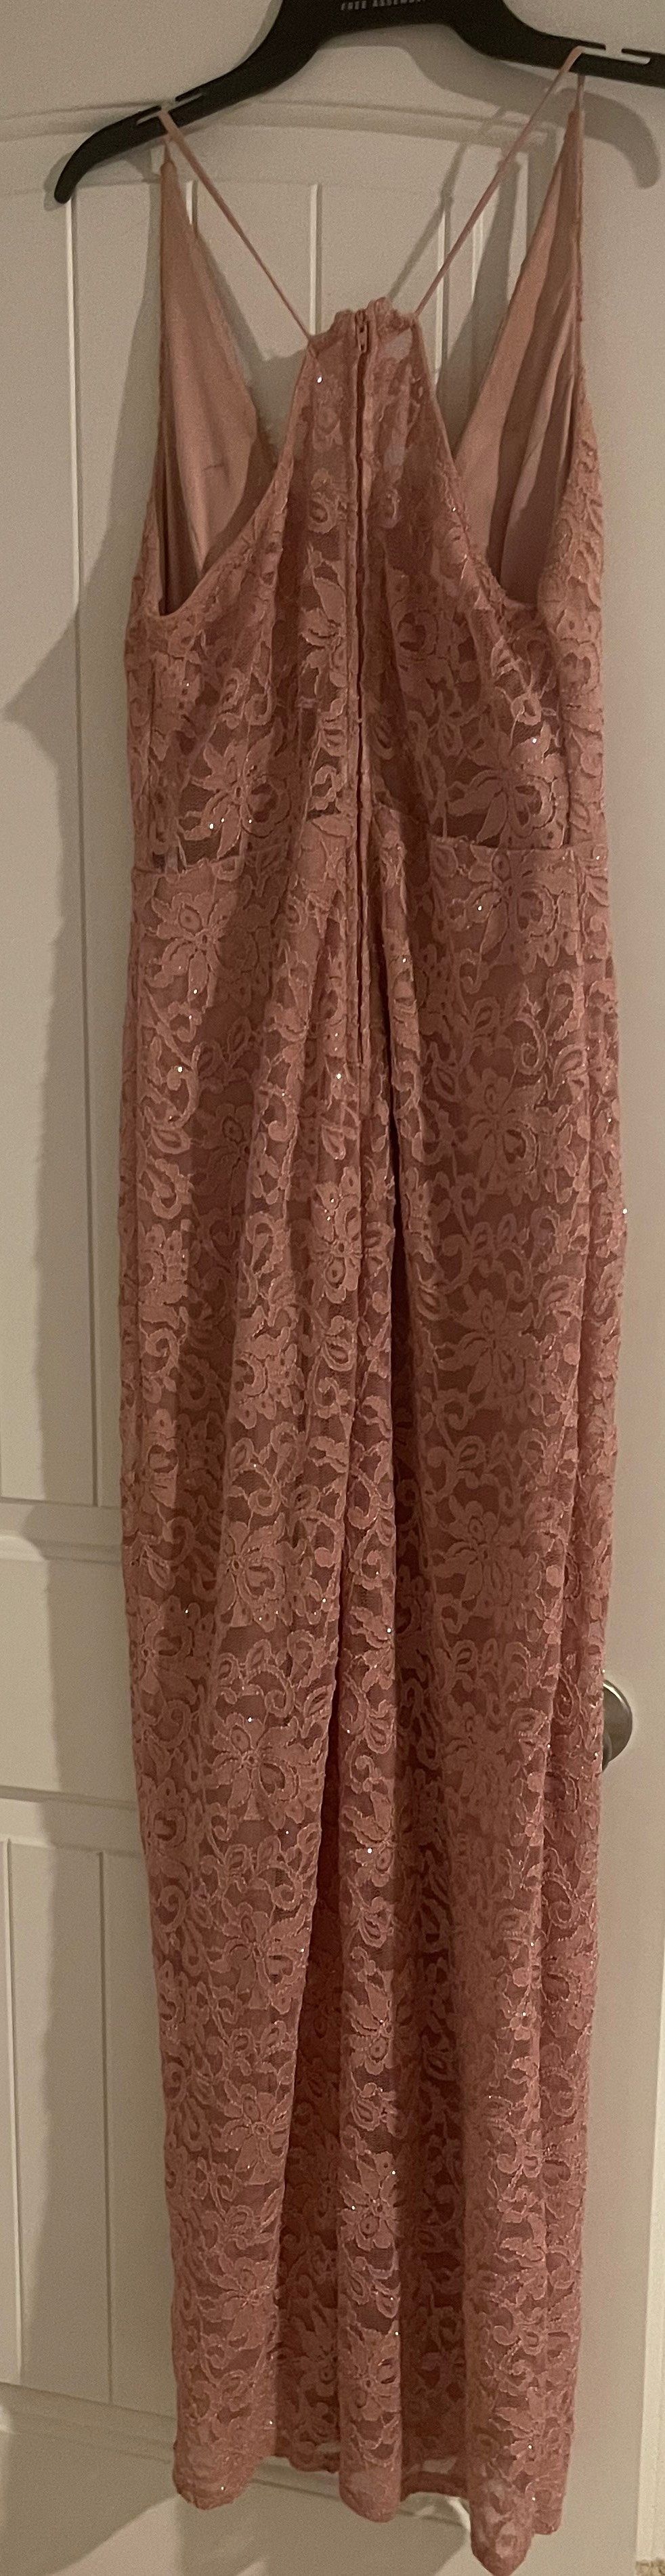 Size 12 Halter Pink Side Slit Dress on Queenly